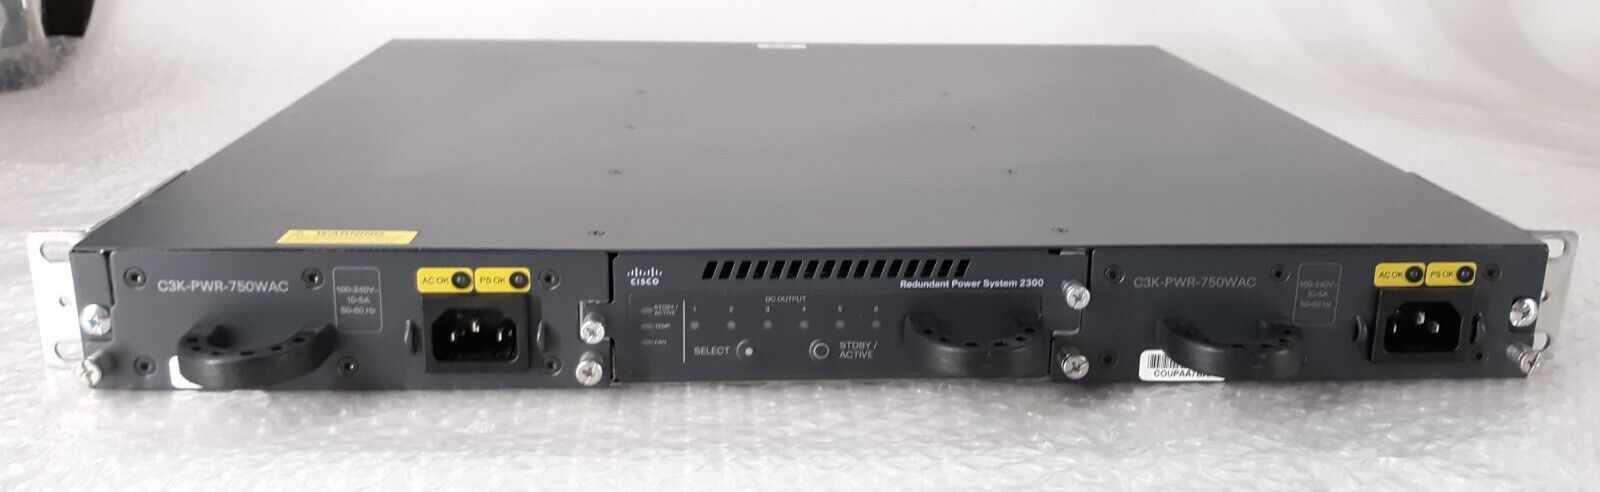 Cisco Redundant Power System 2300 PWR-RSP2300 V02 w/ Ears + 2x 750WAC PSU